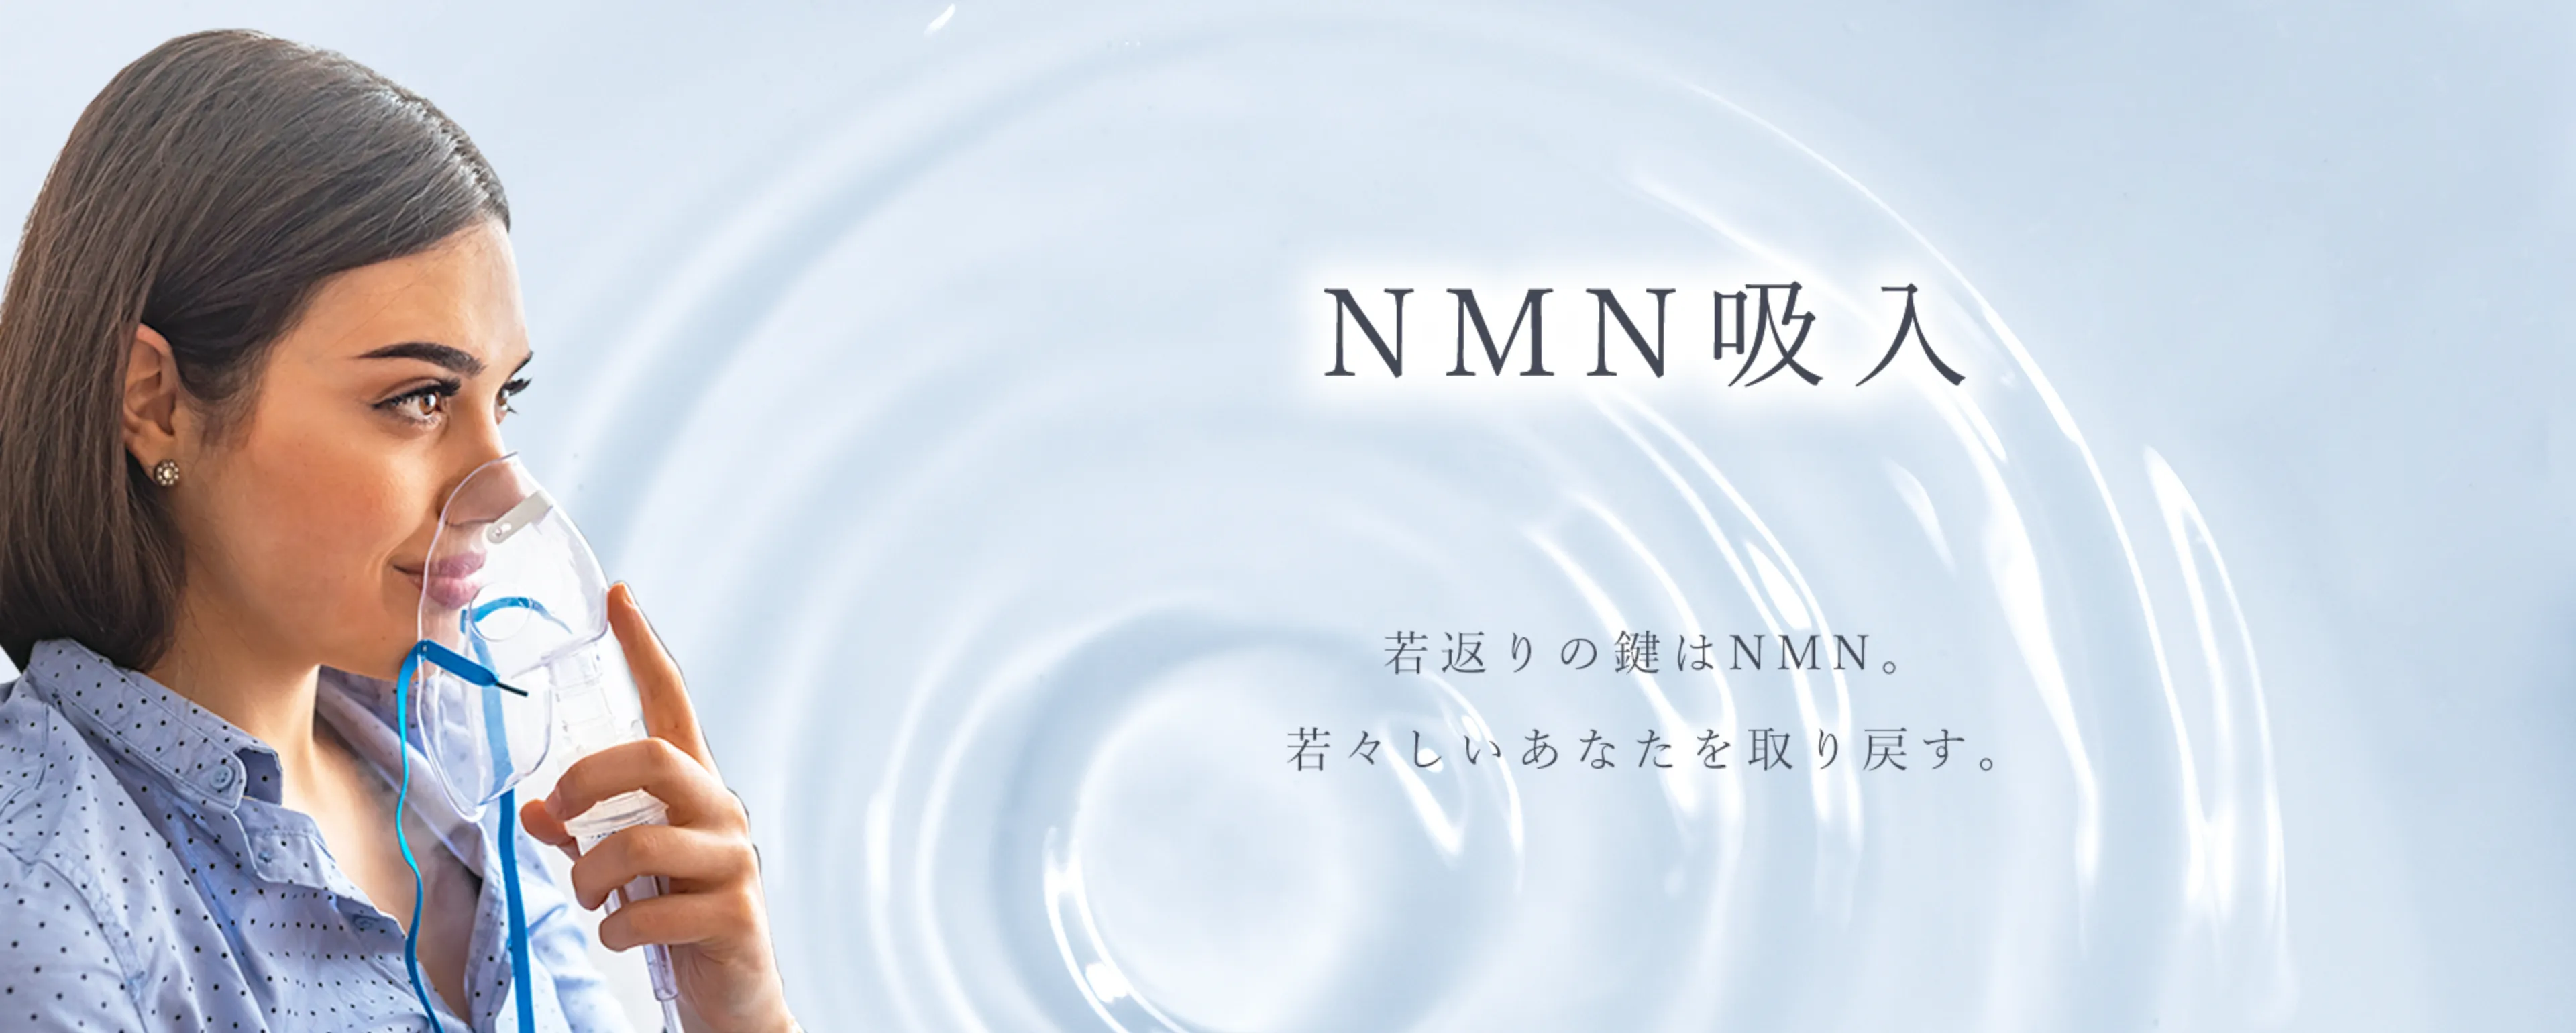 nmn-top-banner